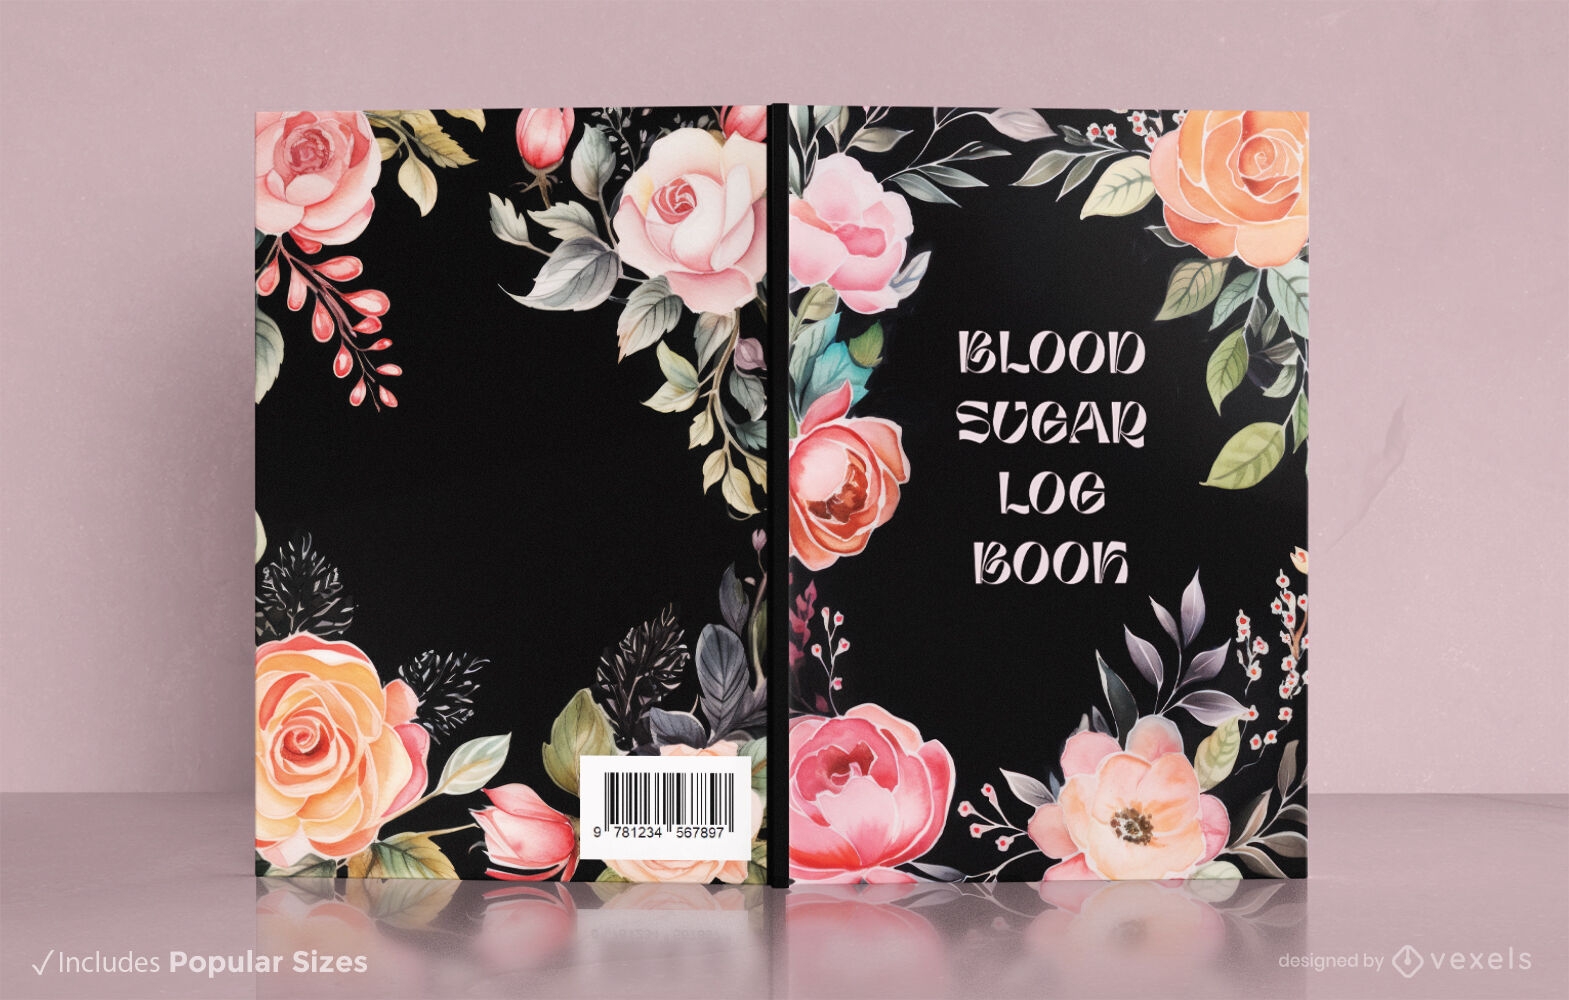 Diseño de portada de libro sobre azúcar en sangre de rosas.